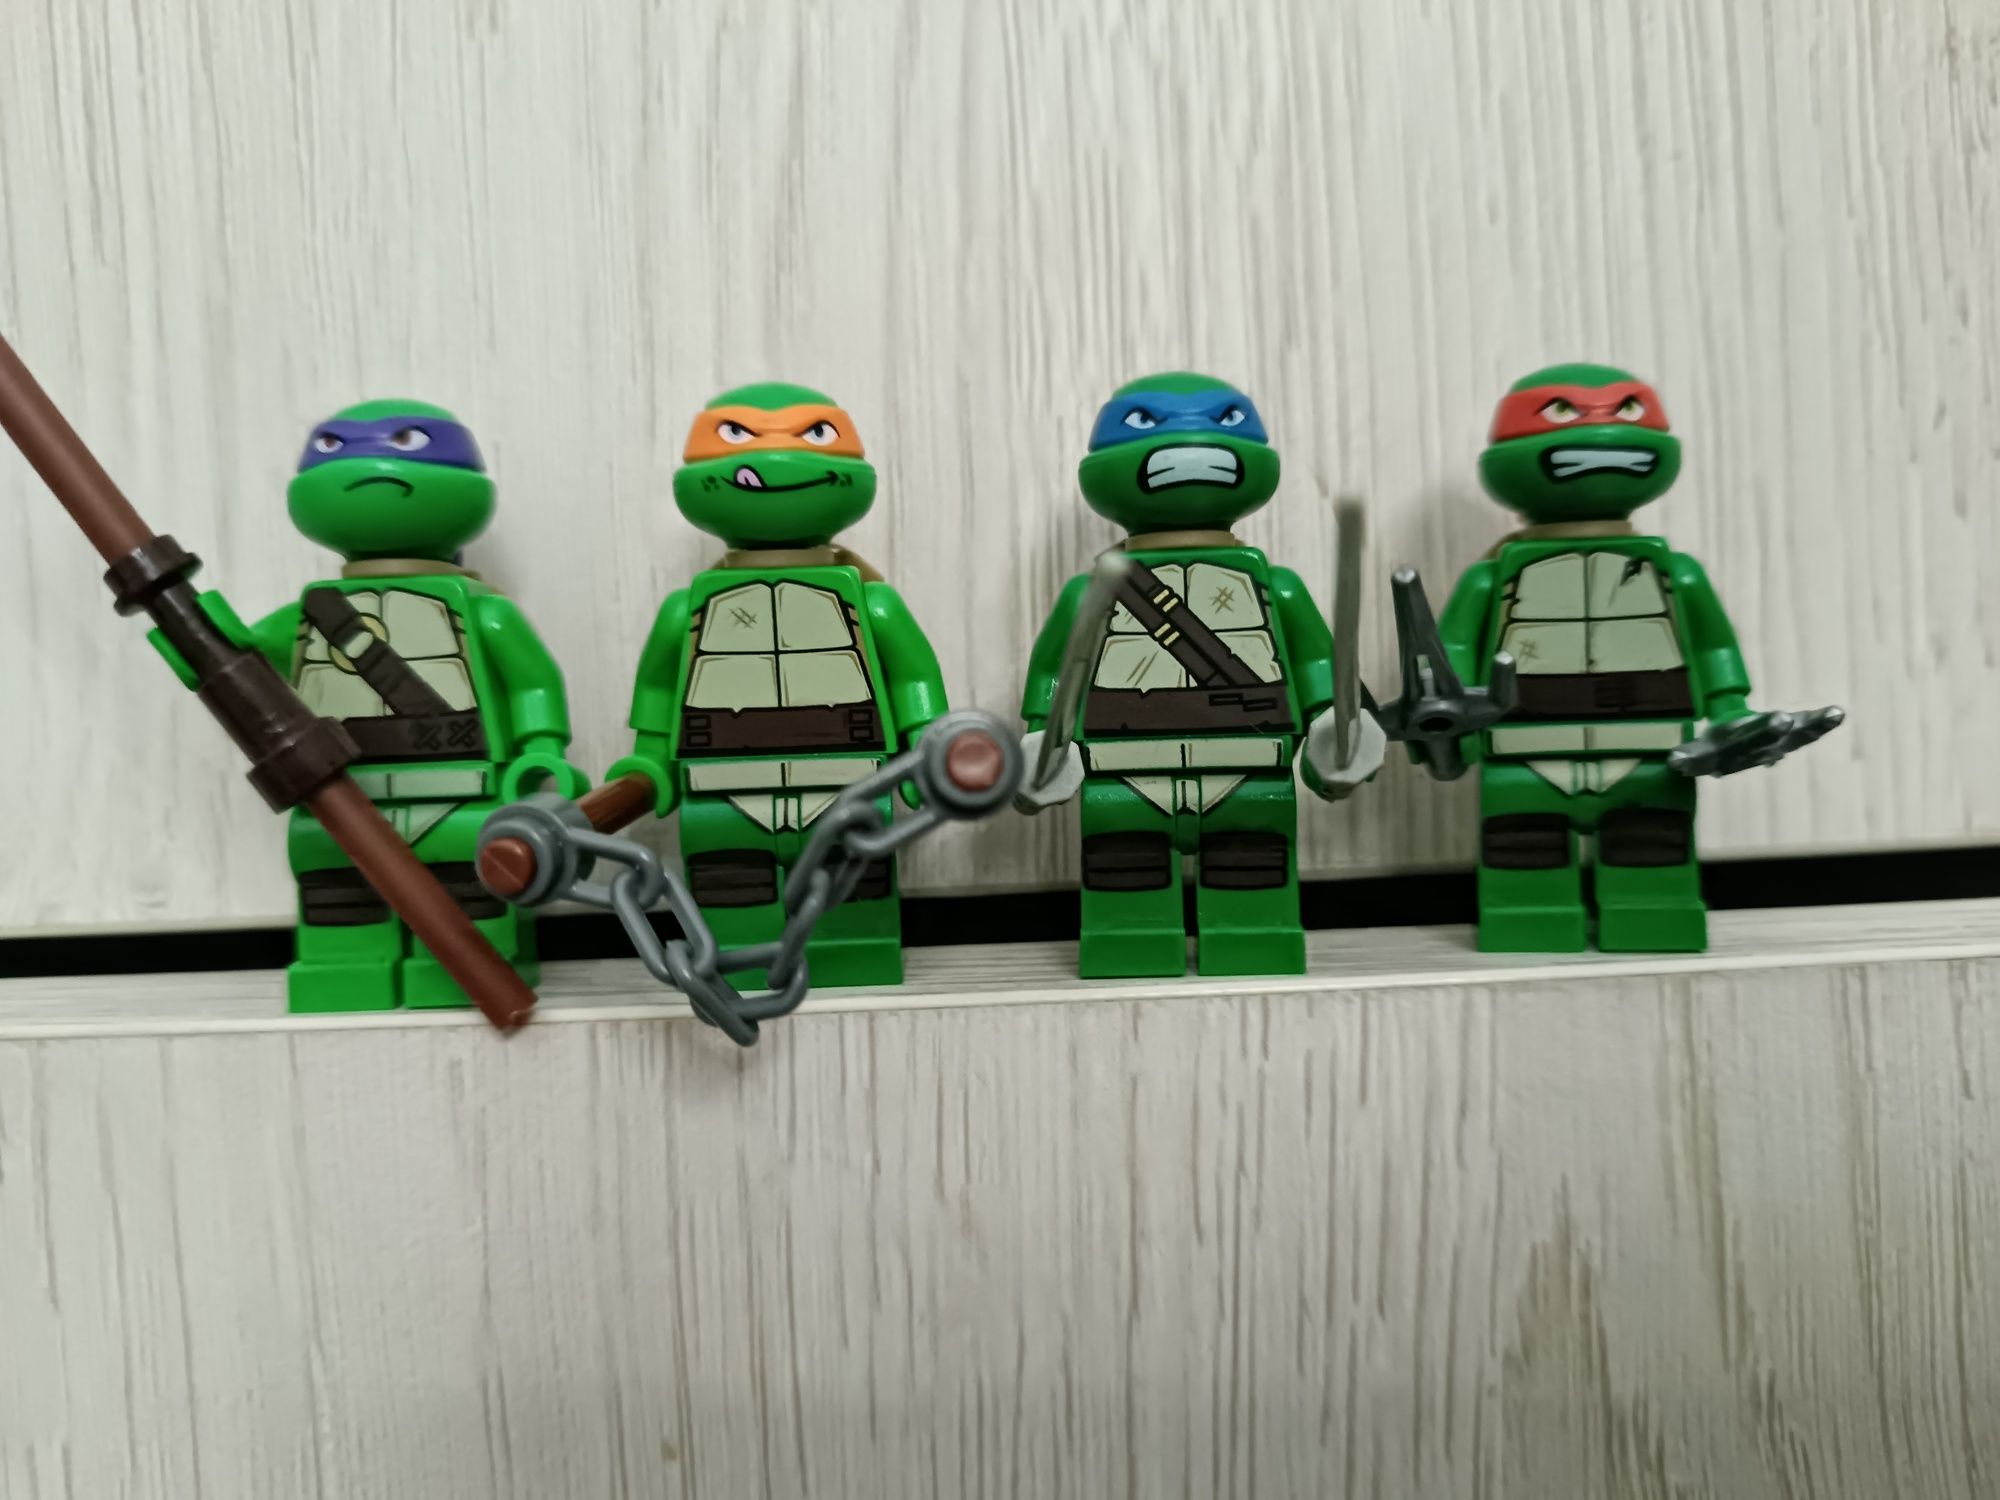 LEGO Wojownicze Żółwie Ninja tnt019 tnt008 tnt003 tnt002